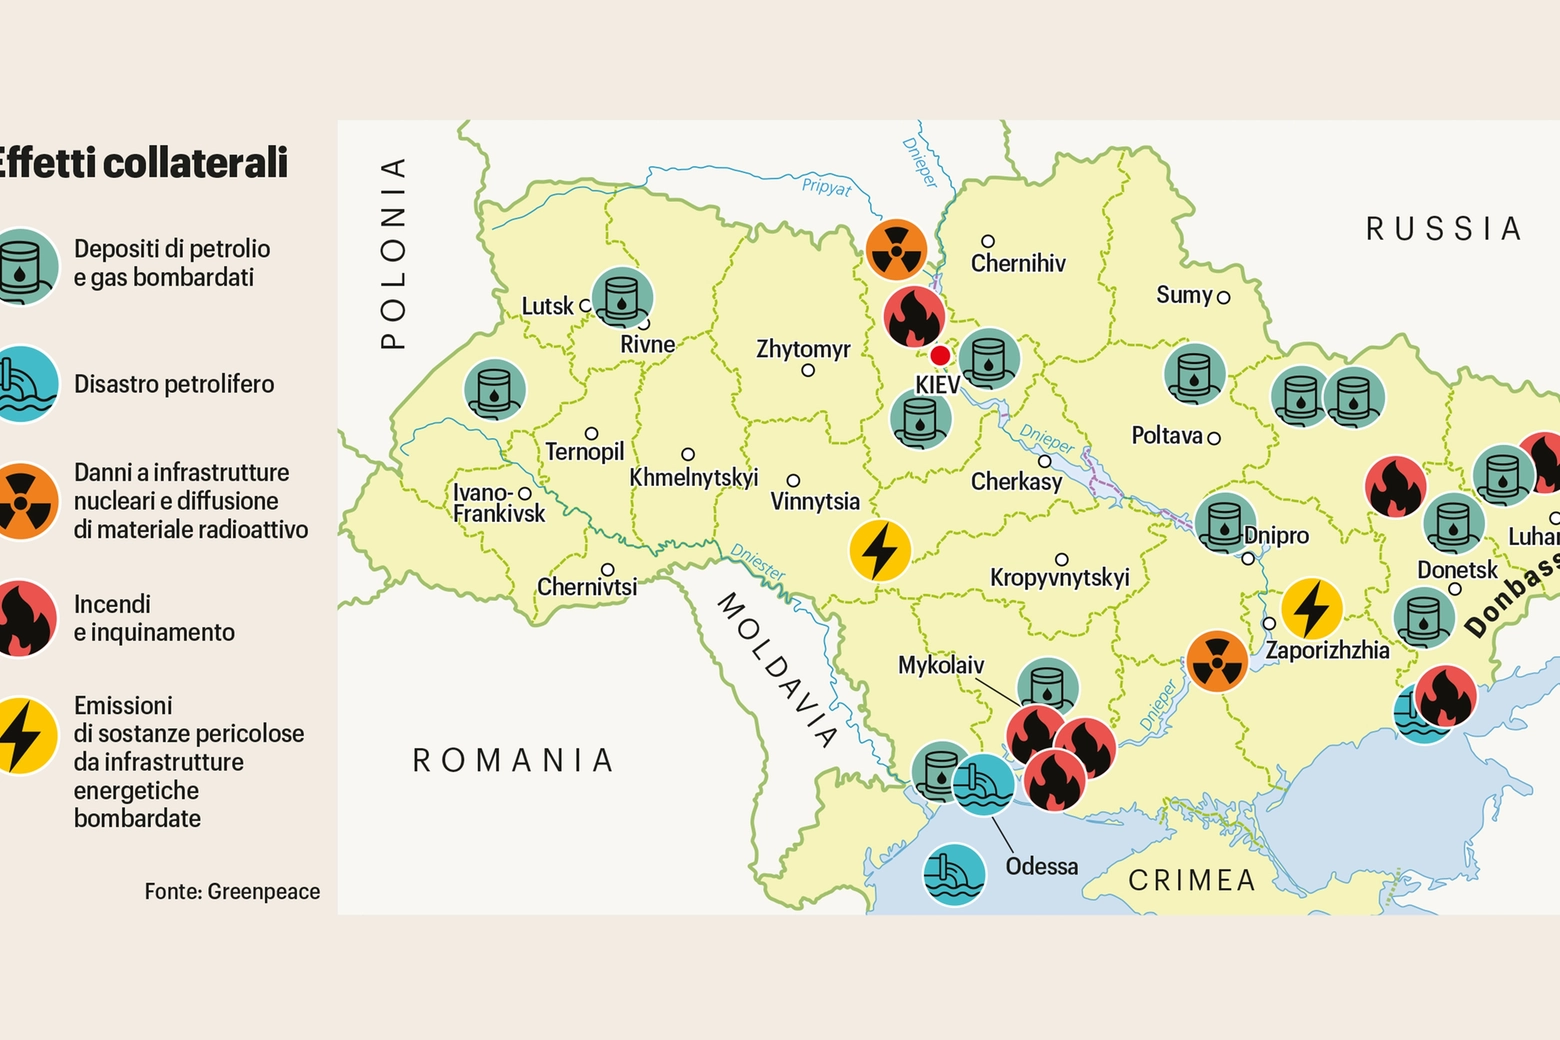 Guerra in Ucraina, gli effetti collaterali sull'ambiente